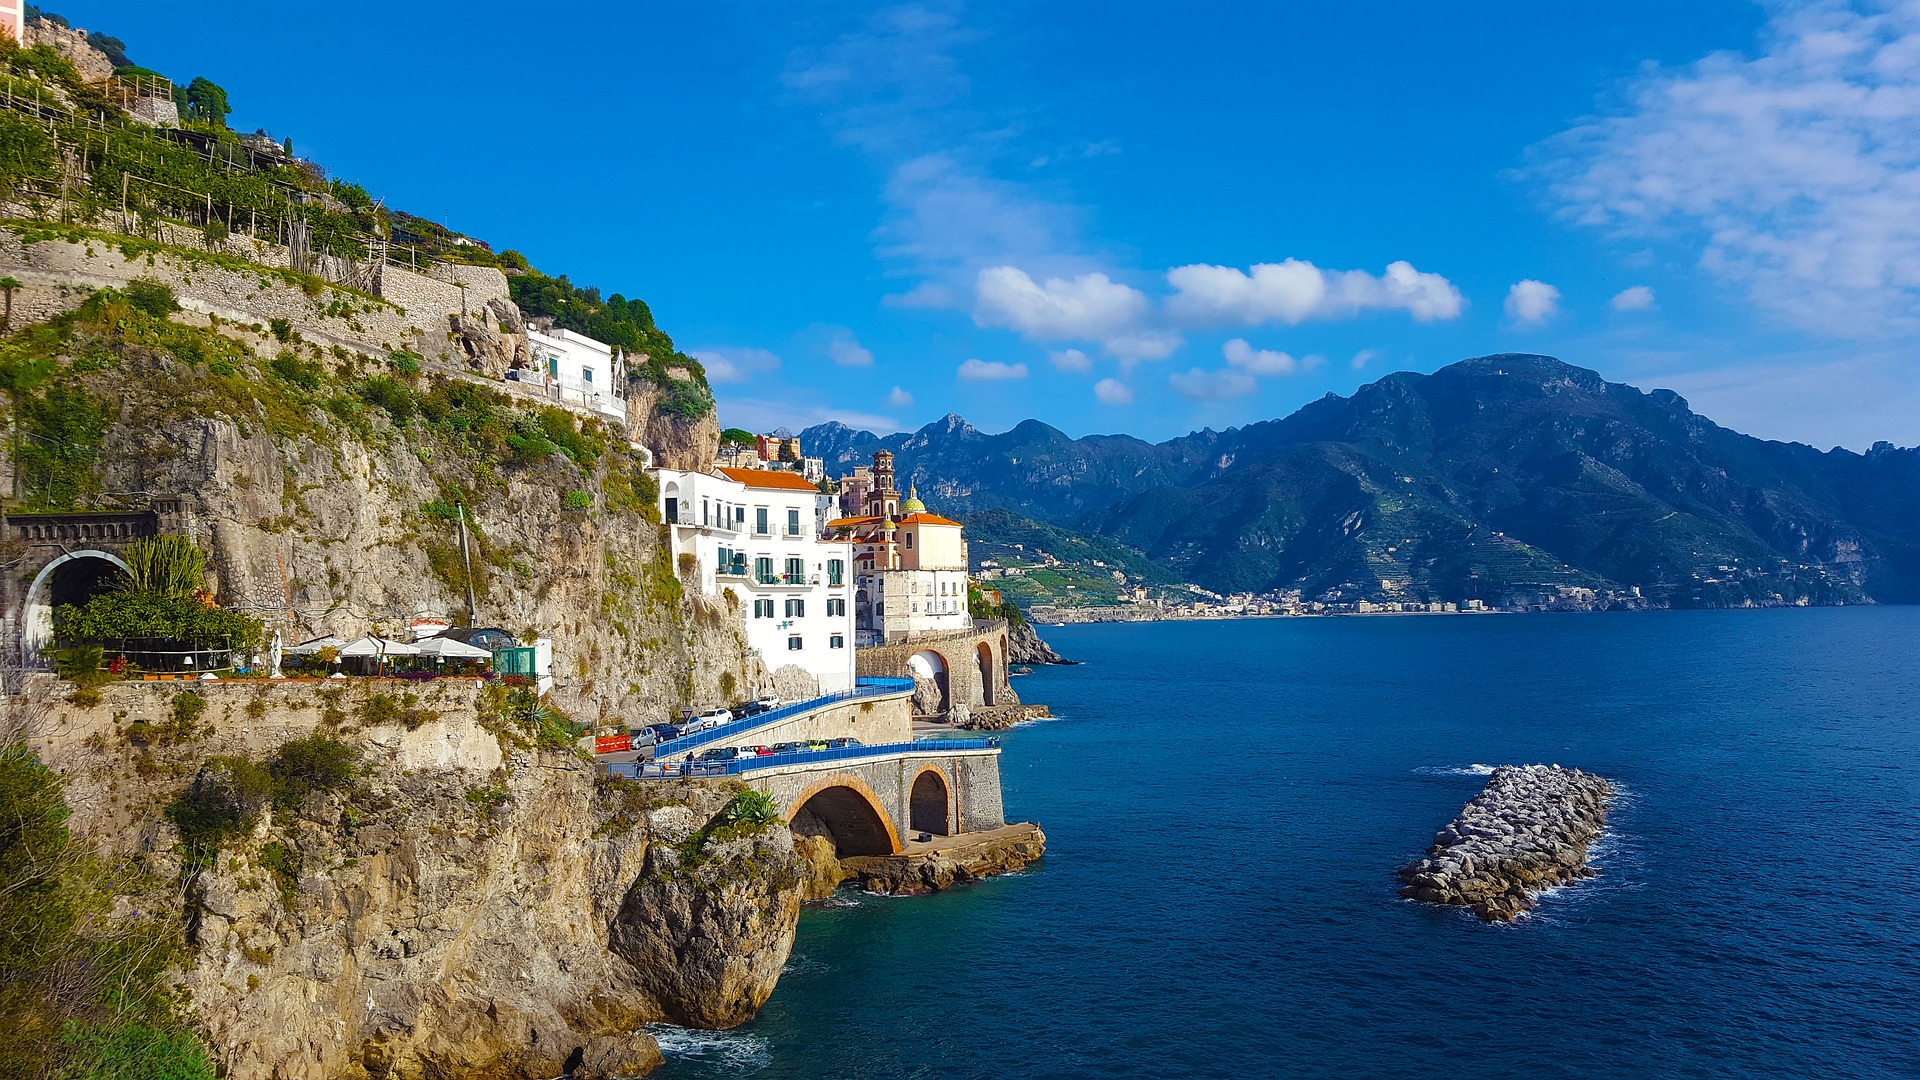 La carretera de los dioses: qué ver en la Costa Amalfitana